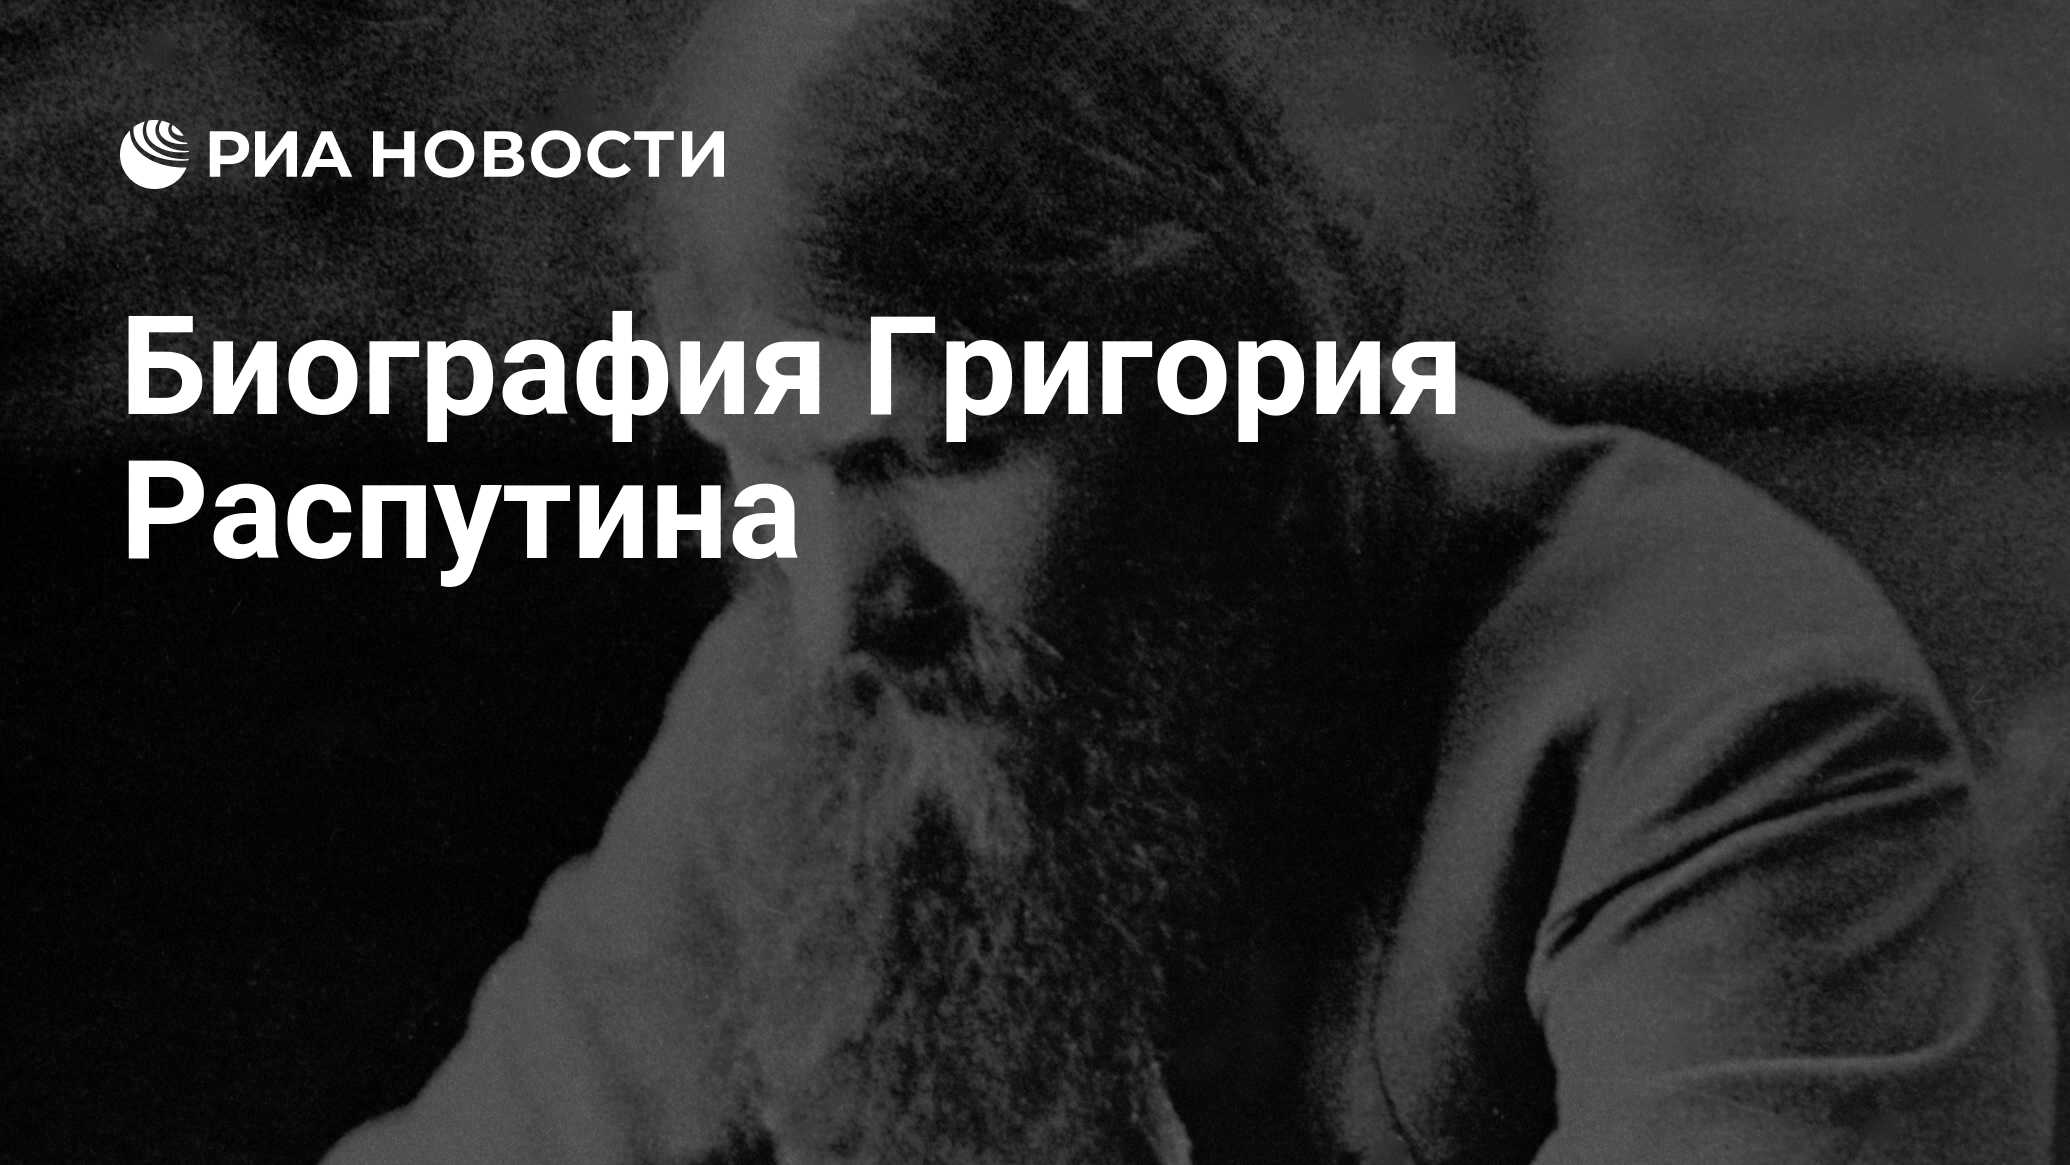 Биография Григория Распутина: основные события его жизни